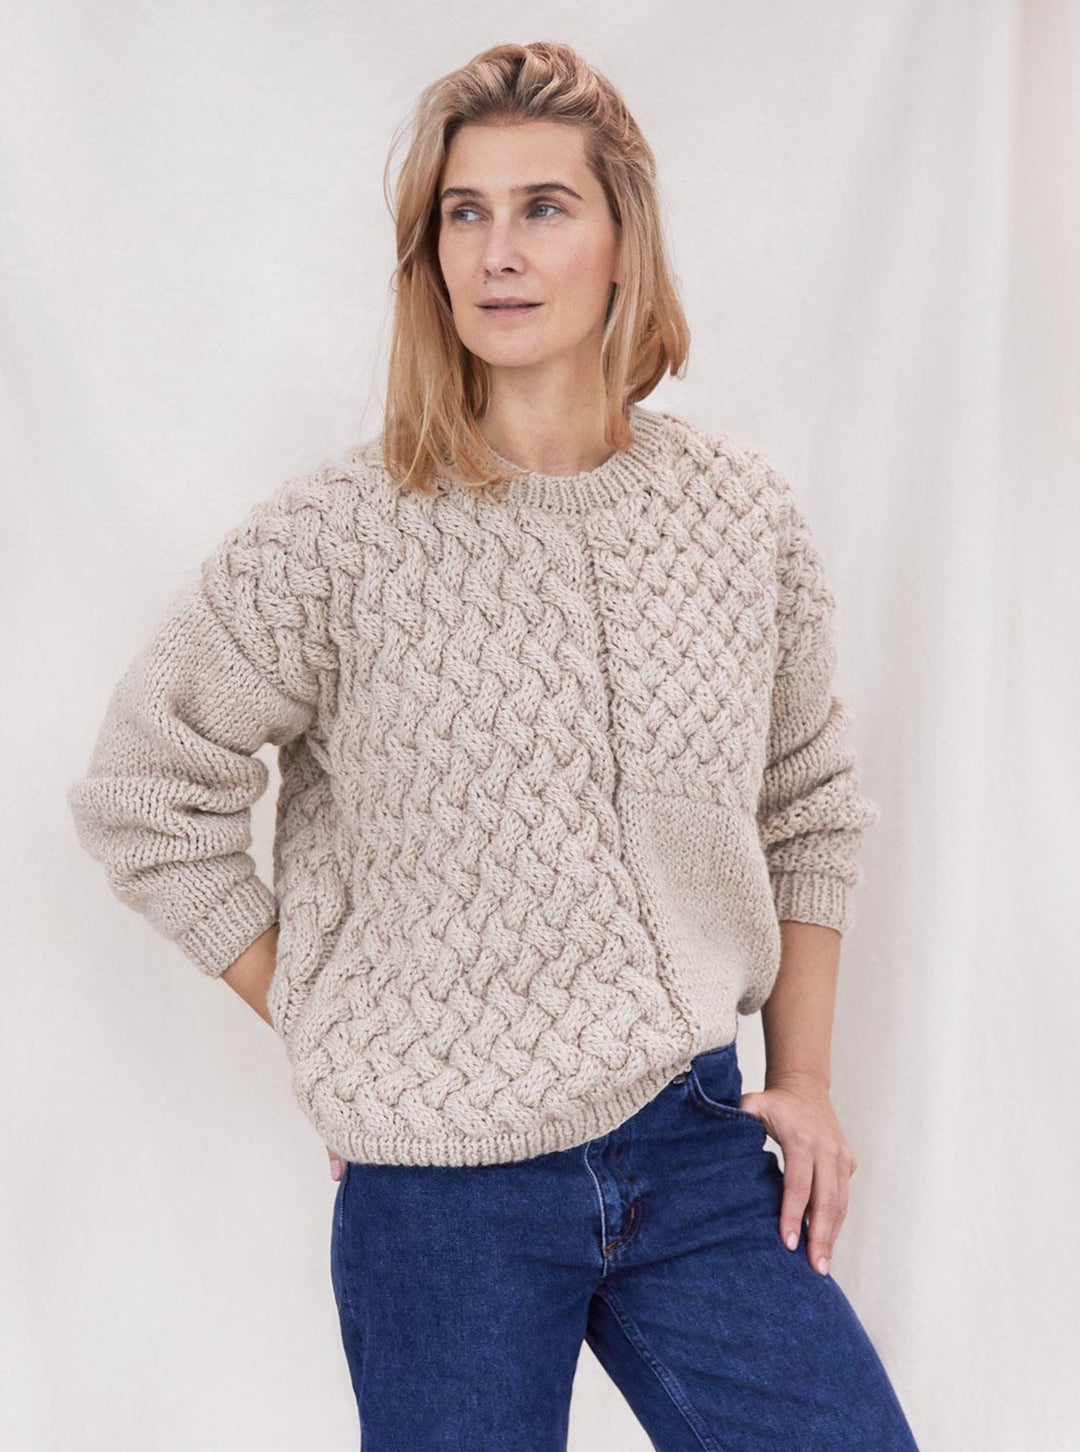 Heartbreaker Sweater - Beige – For Days